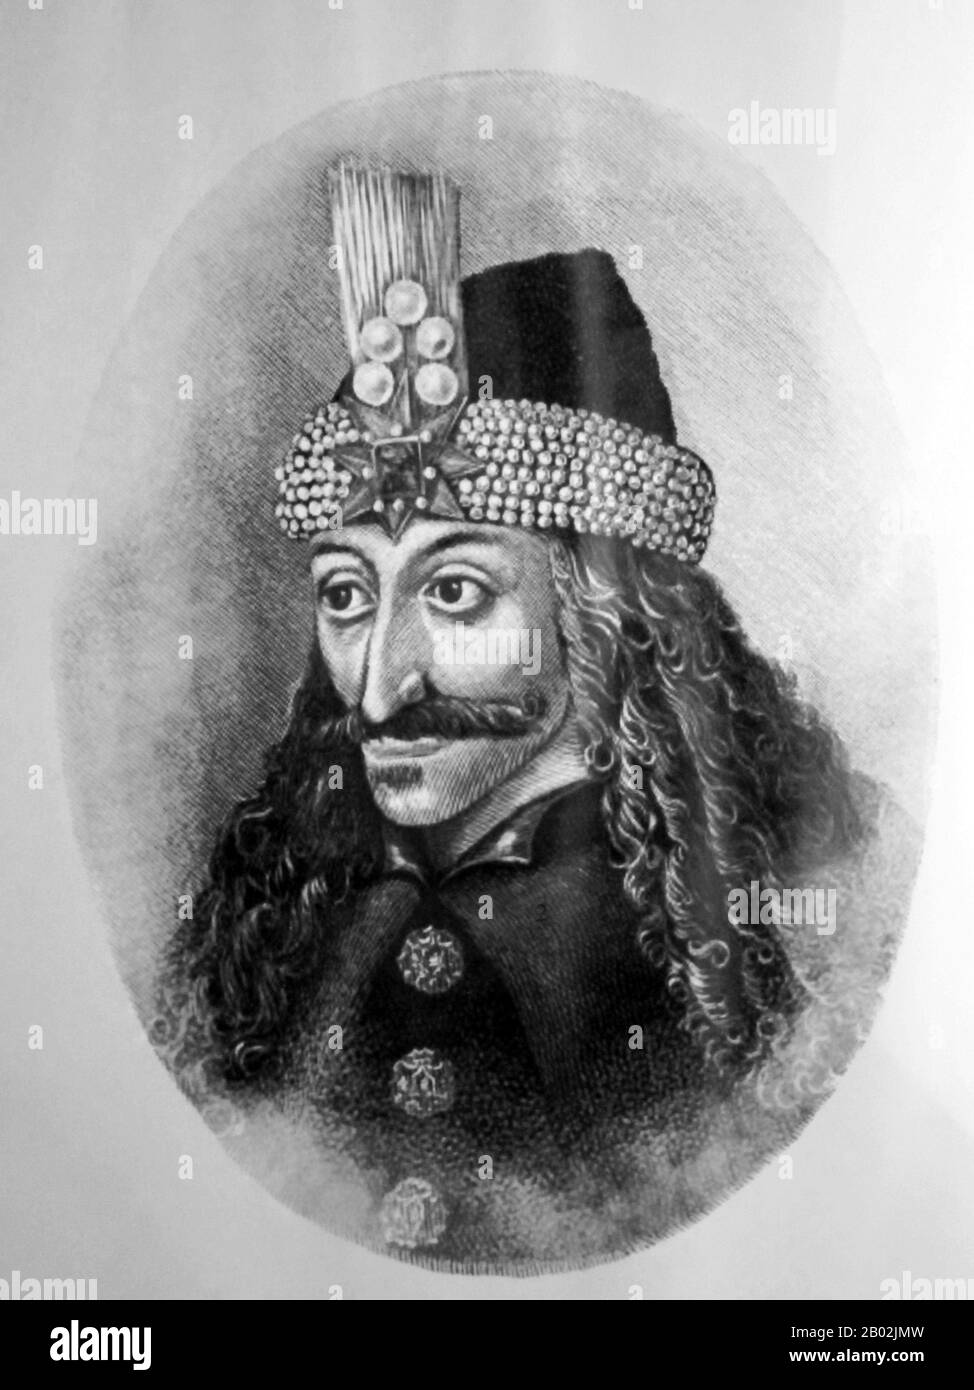 Vlad III, Principe di Wallachia (1431–1476/77), era un membro della Casa di Drăculești, un ramo della Casa di Basarab, anche noto, usando il suo patronimico, come (Vlad) Drăculea o (Vlad) Dracula. Fu soprannominato postumo Vlad l'Impalatore (rumeno Vlad Țepeș), ed era una Voivode di Wallachia, che regnò principalmente dal 1456 al 1462, periodo dell'incipiente conquista ottomana dei Balcani. Suo padre, Vlad II Dracul, era un membro Dell'Ordine del Drago, che fu fondato per proteggere il cristianesimo nell'Europa orientale. Vlad III è venerato come eroe popolare in Romania così come altre parti o Foto Stock